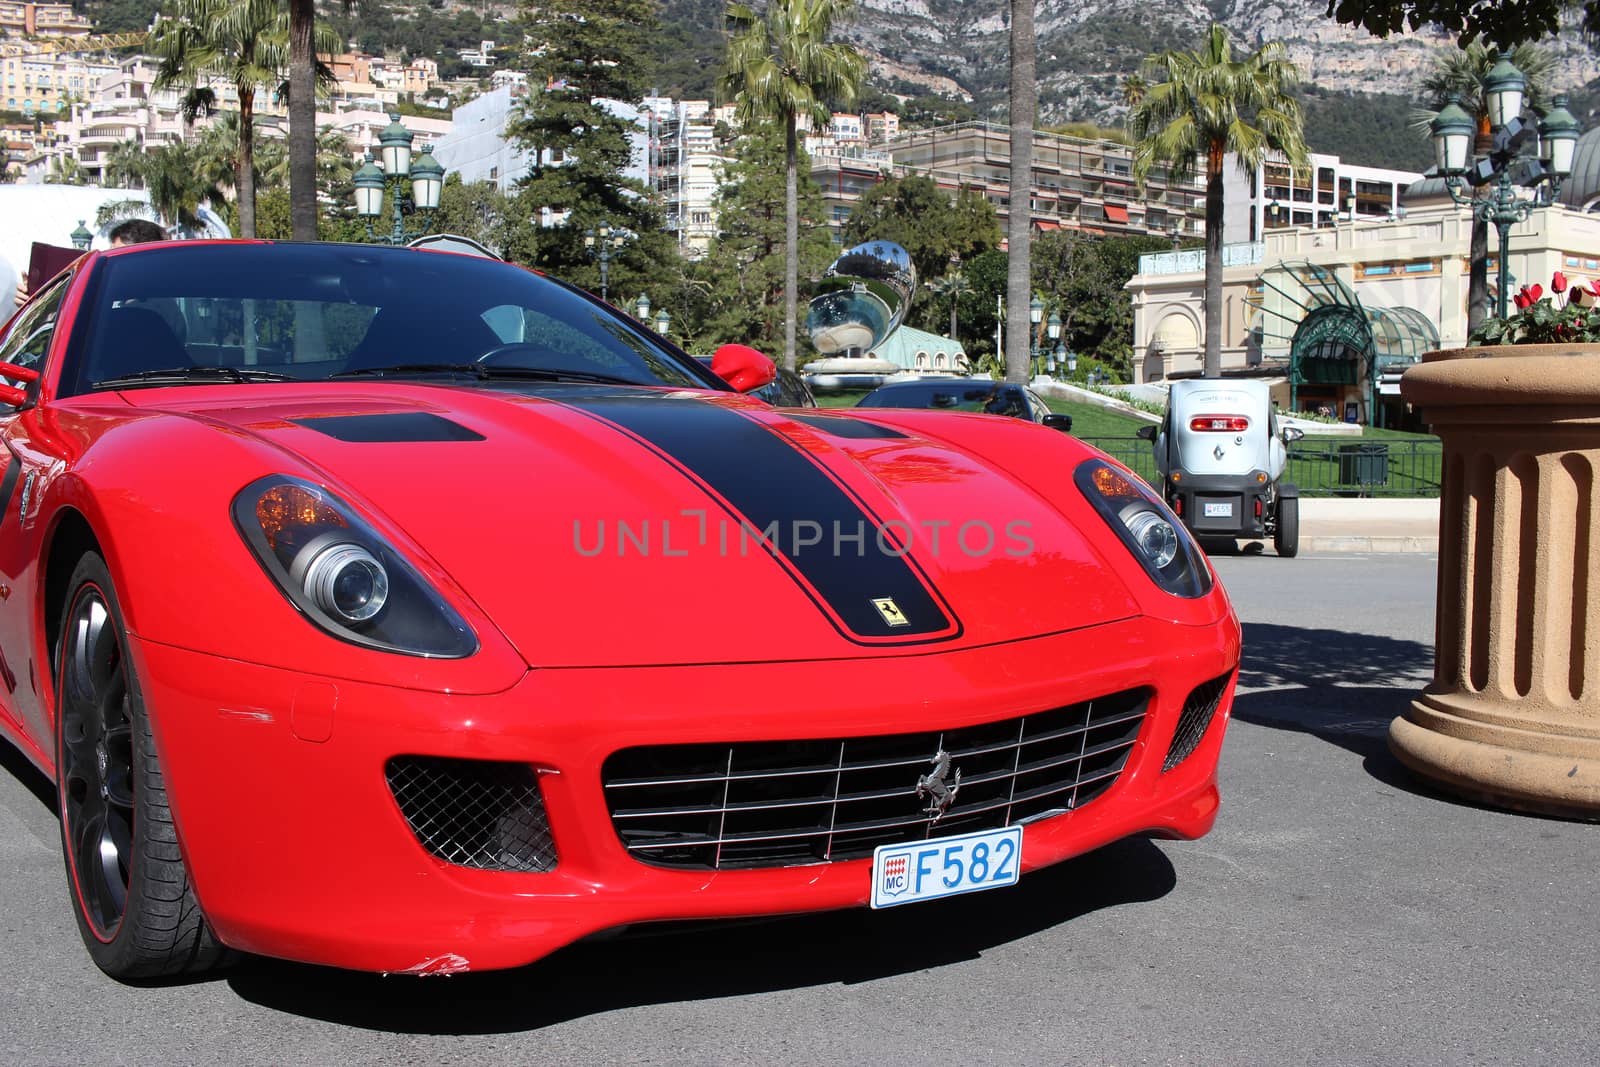 Monte-Carlo, Monaco - March 9, 2016: Red Ferrari 430 Scuderia Parked in Front of the Monte-Carlo Casino in Monaco